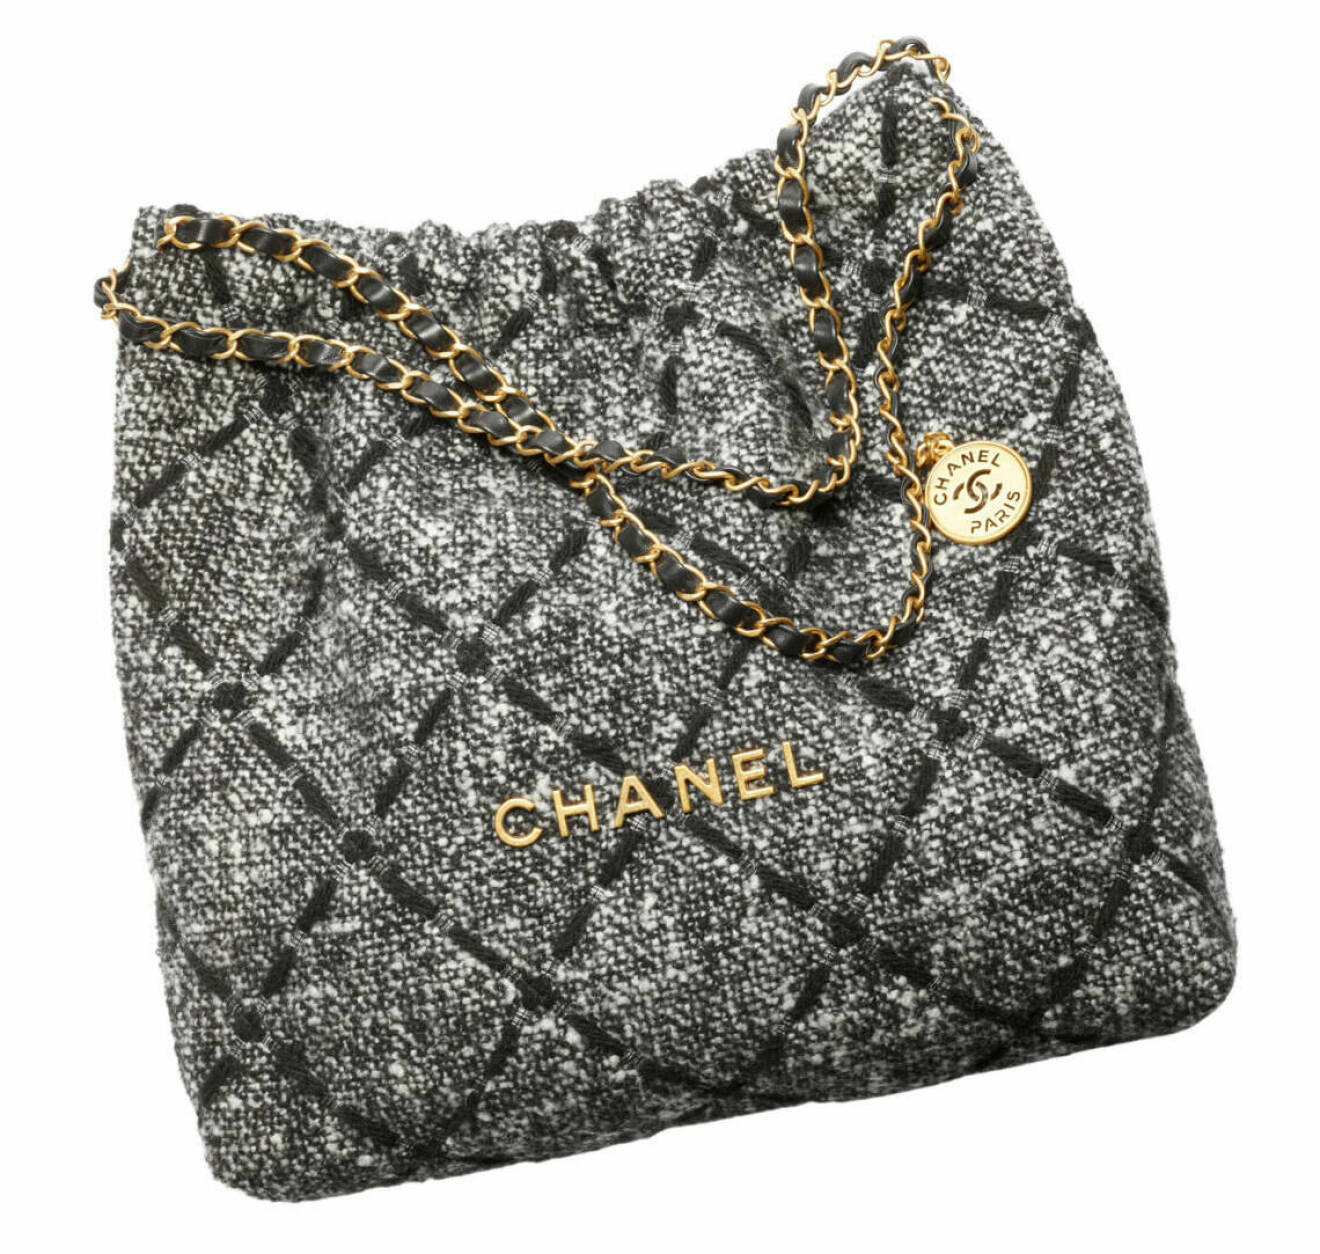 Tweedväska med rutigt mönster från Chanel